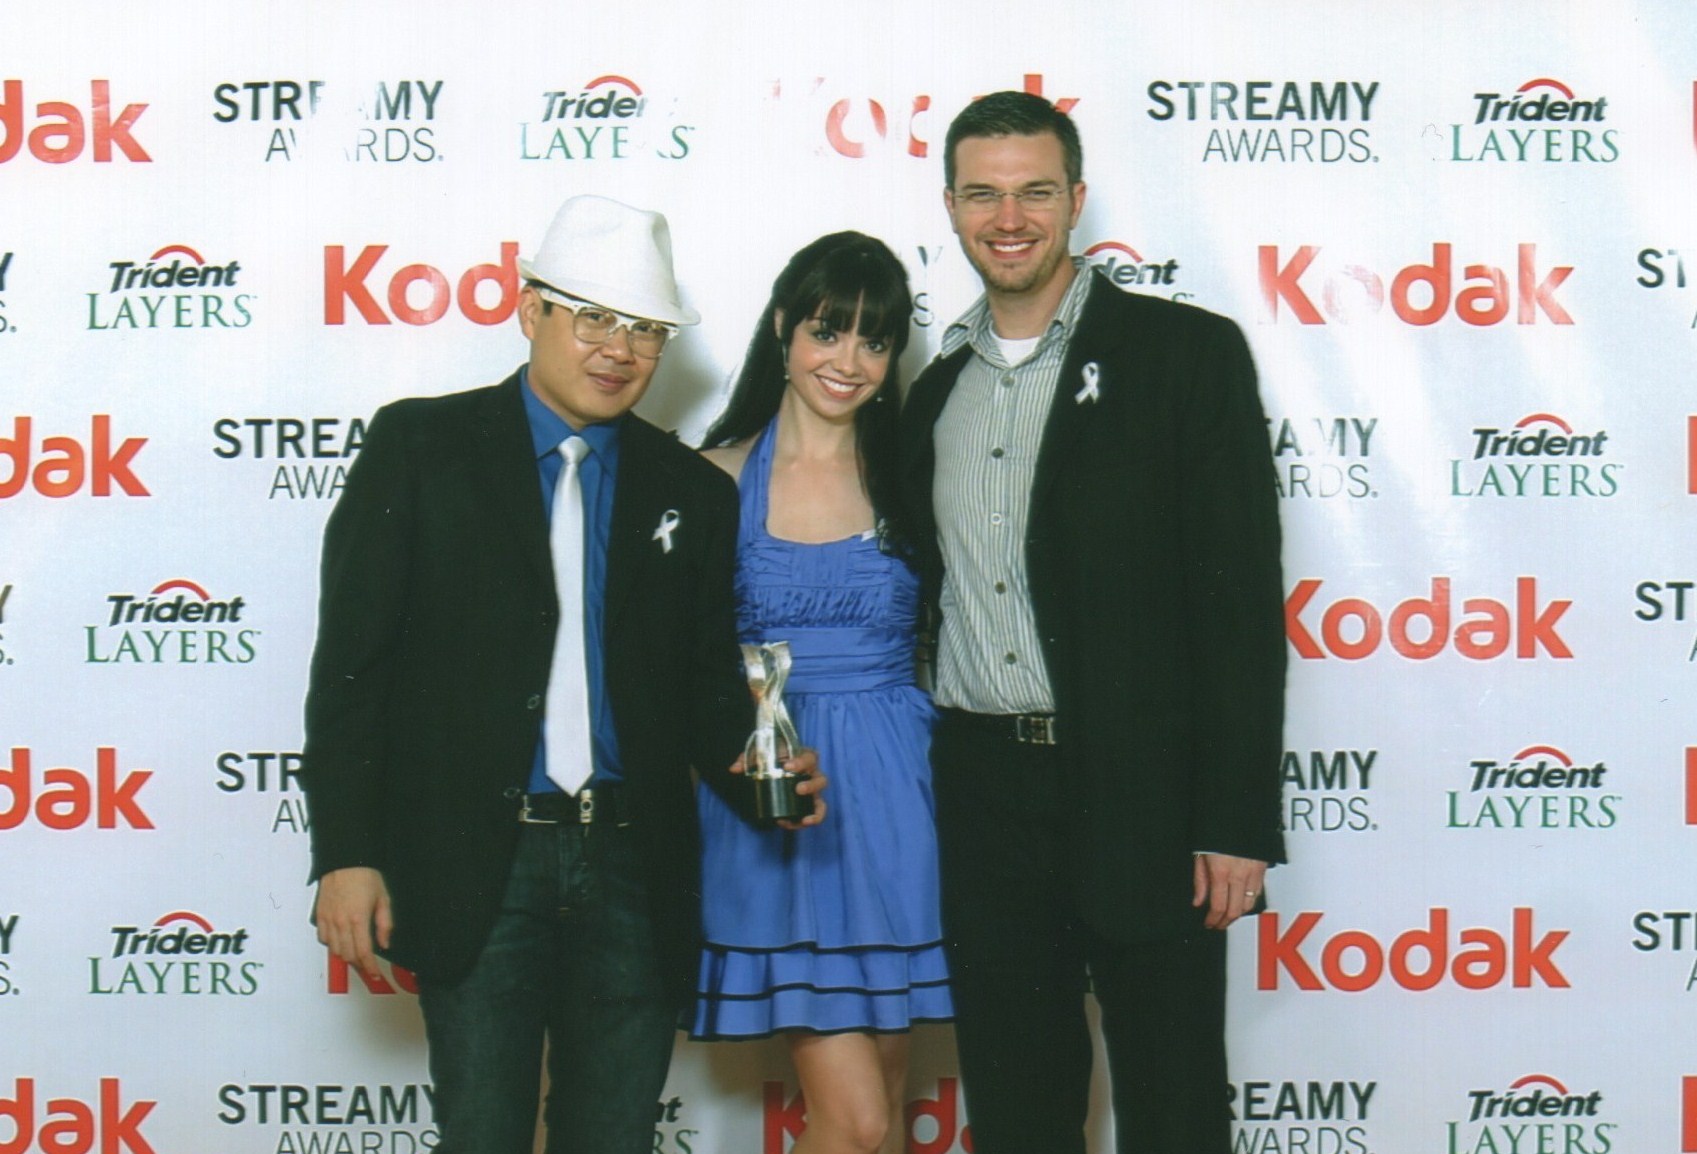 Streamy Awards 2010